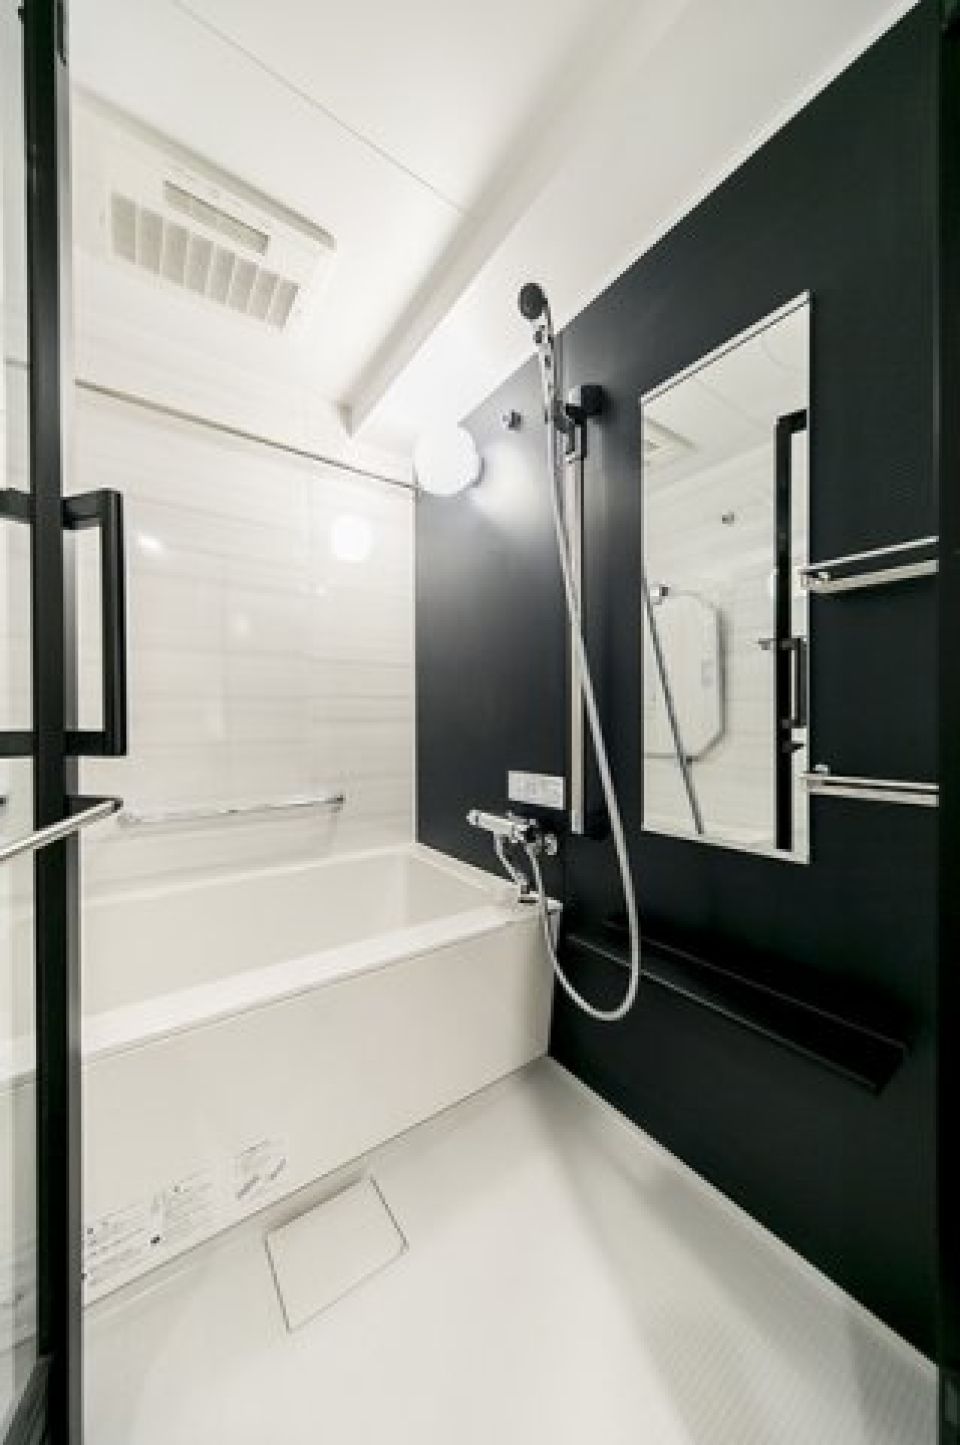 ダークトーンのパネルが採用された浴室です。※写真は同タイプ住戸です。